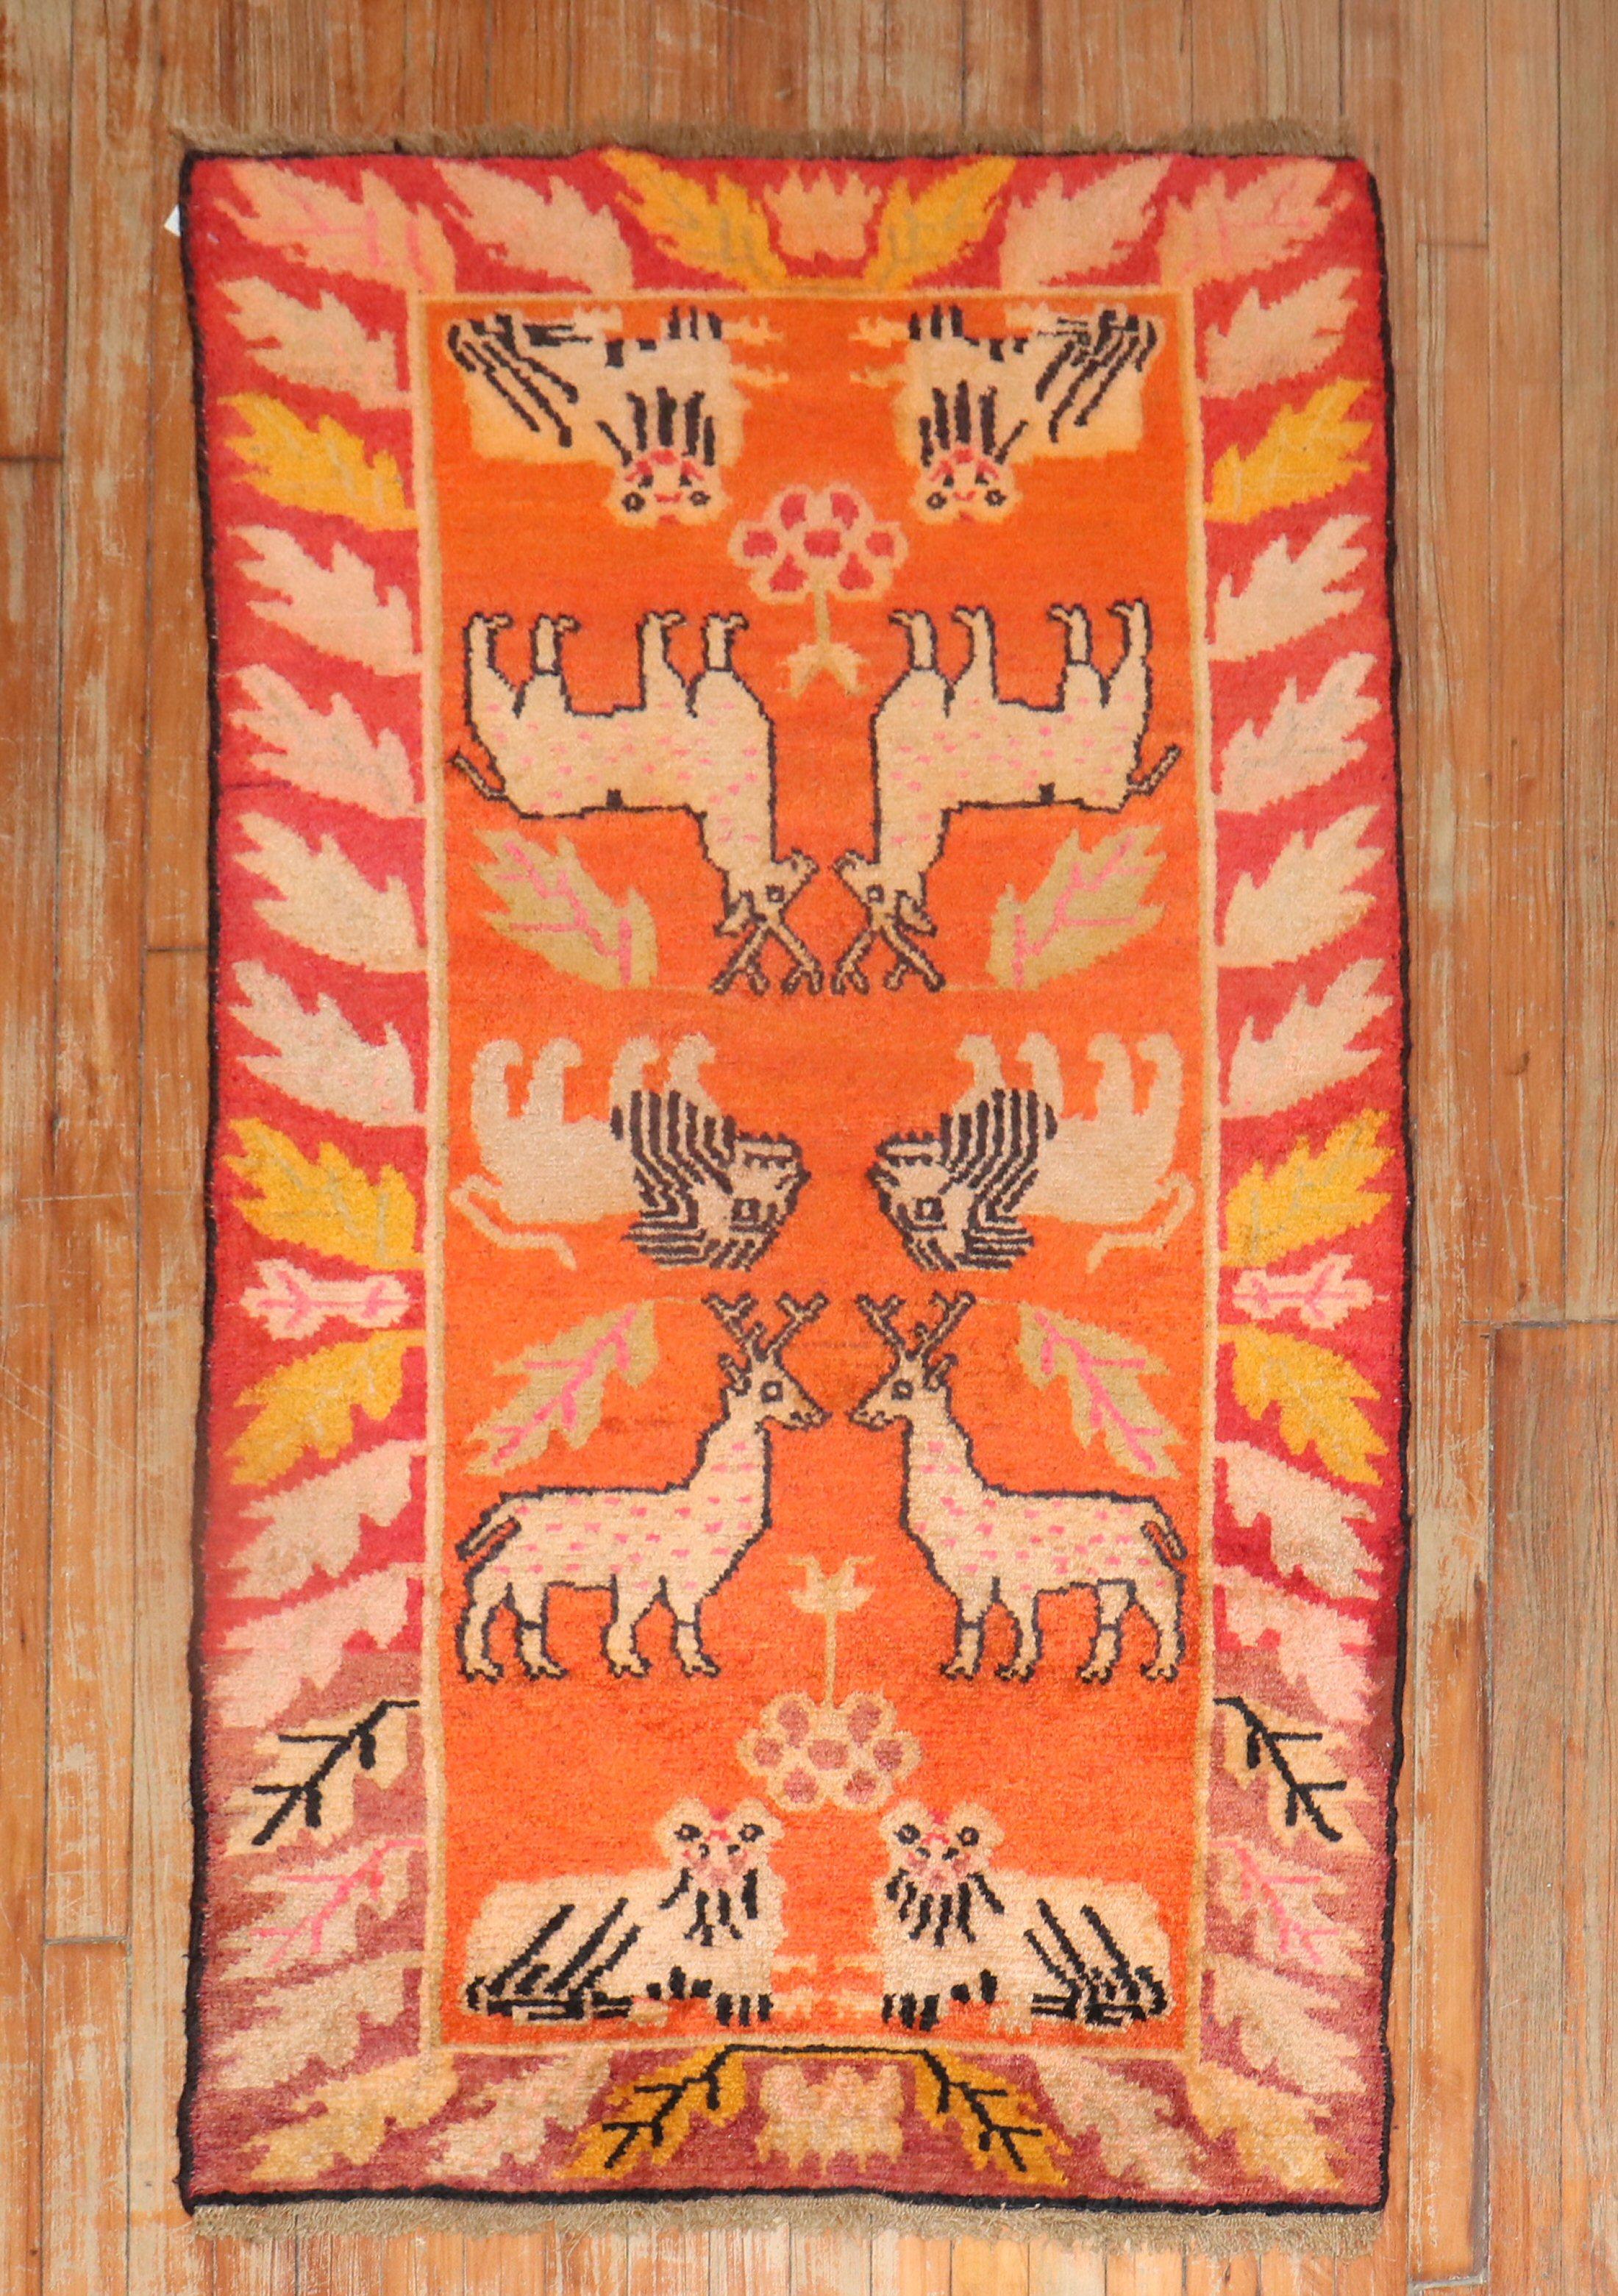 Tibetischer Teppich aus dem 2. Viertel des 20. Jahrhunderts mit einem Tierbildmotiv auf orangefarbenem Grund

Maße: 2'10